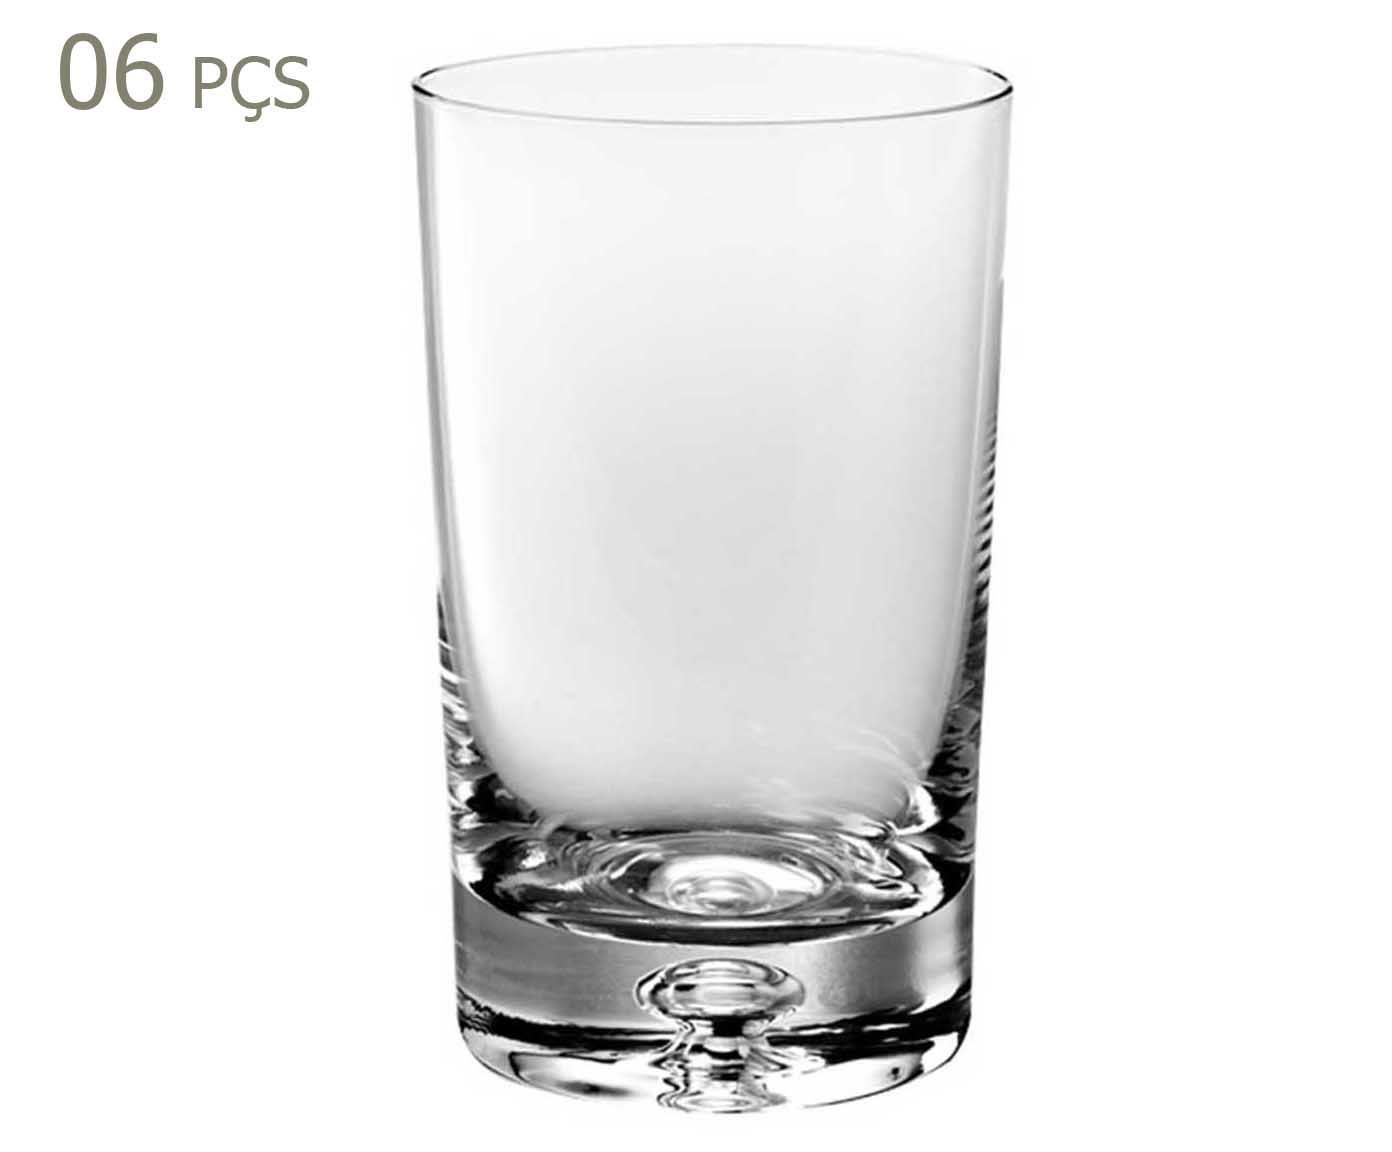 Conjunto de copos para licor bluma | Westwing.com.br